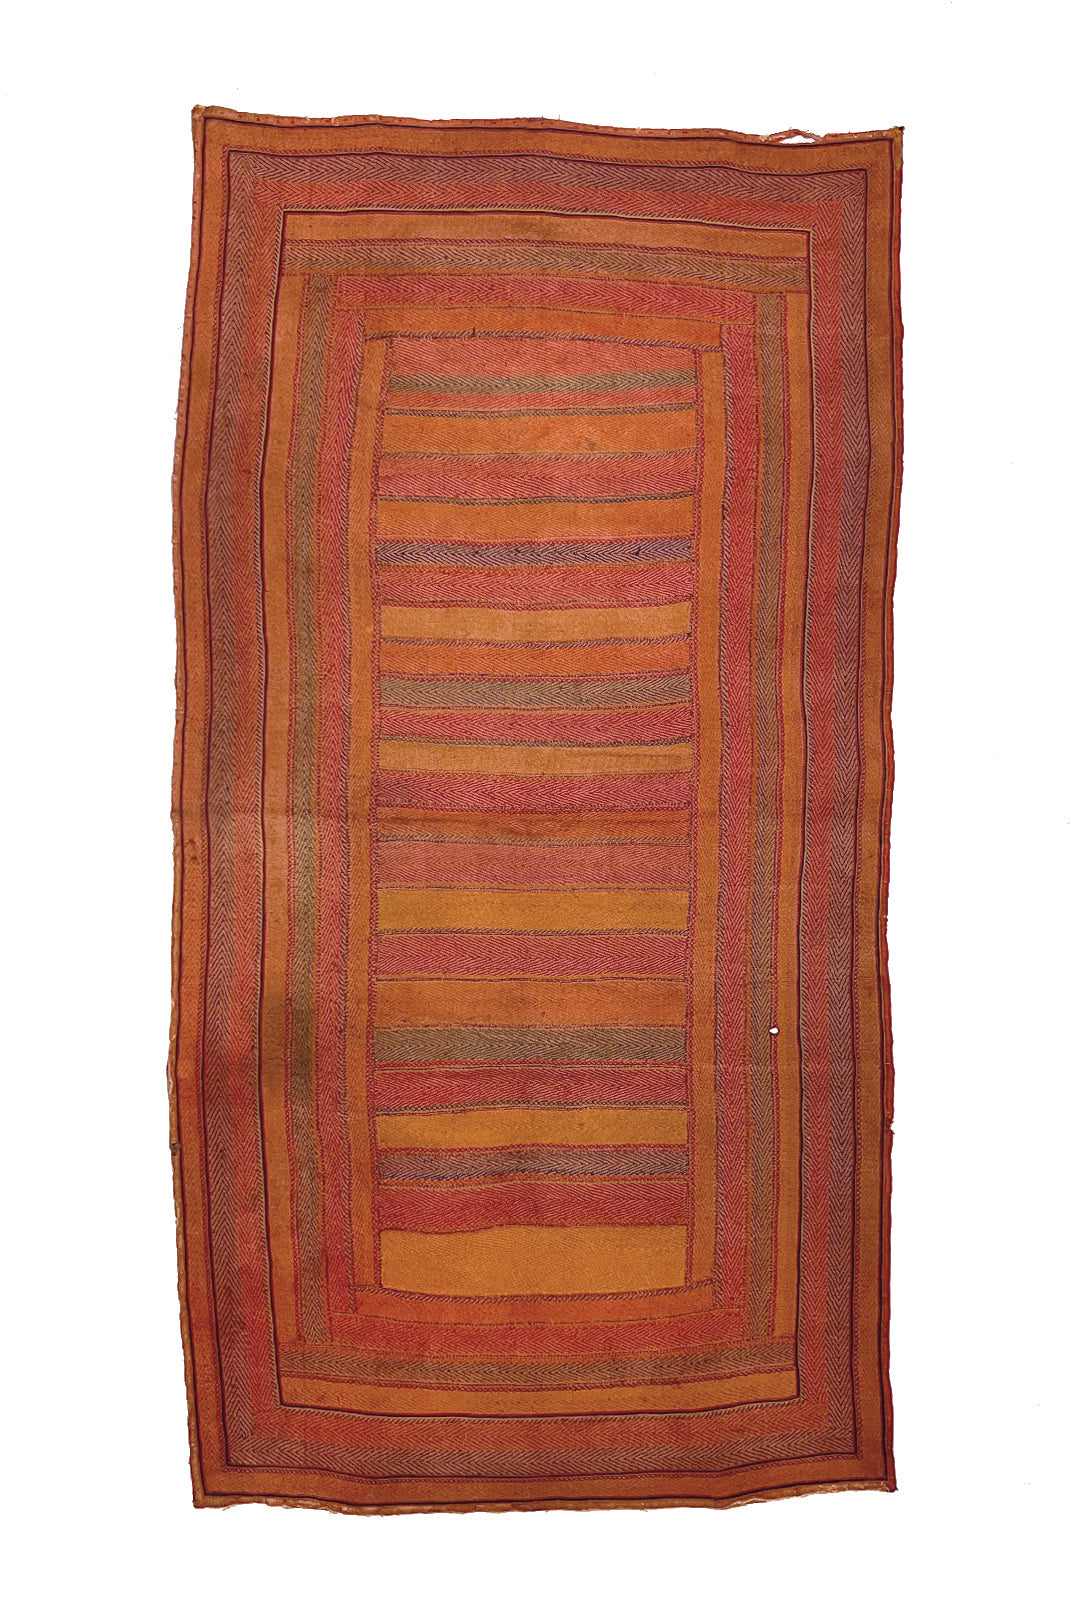 Banjara Kantha Blanket